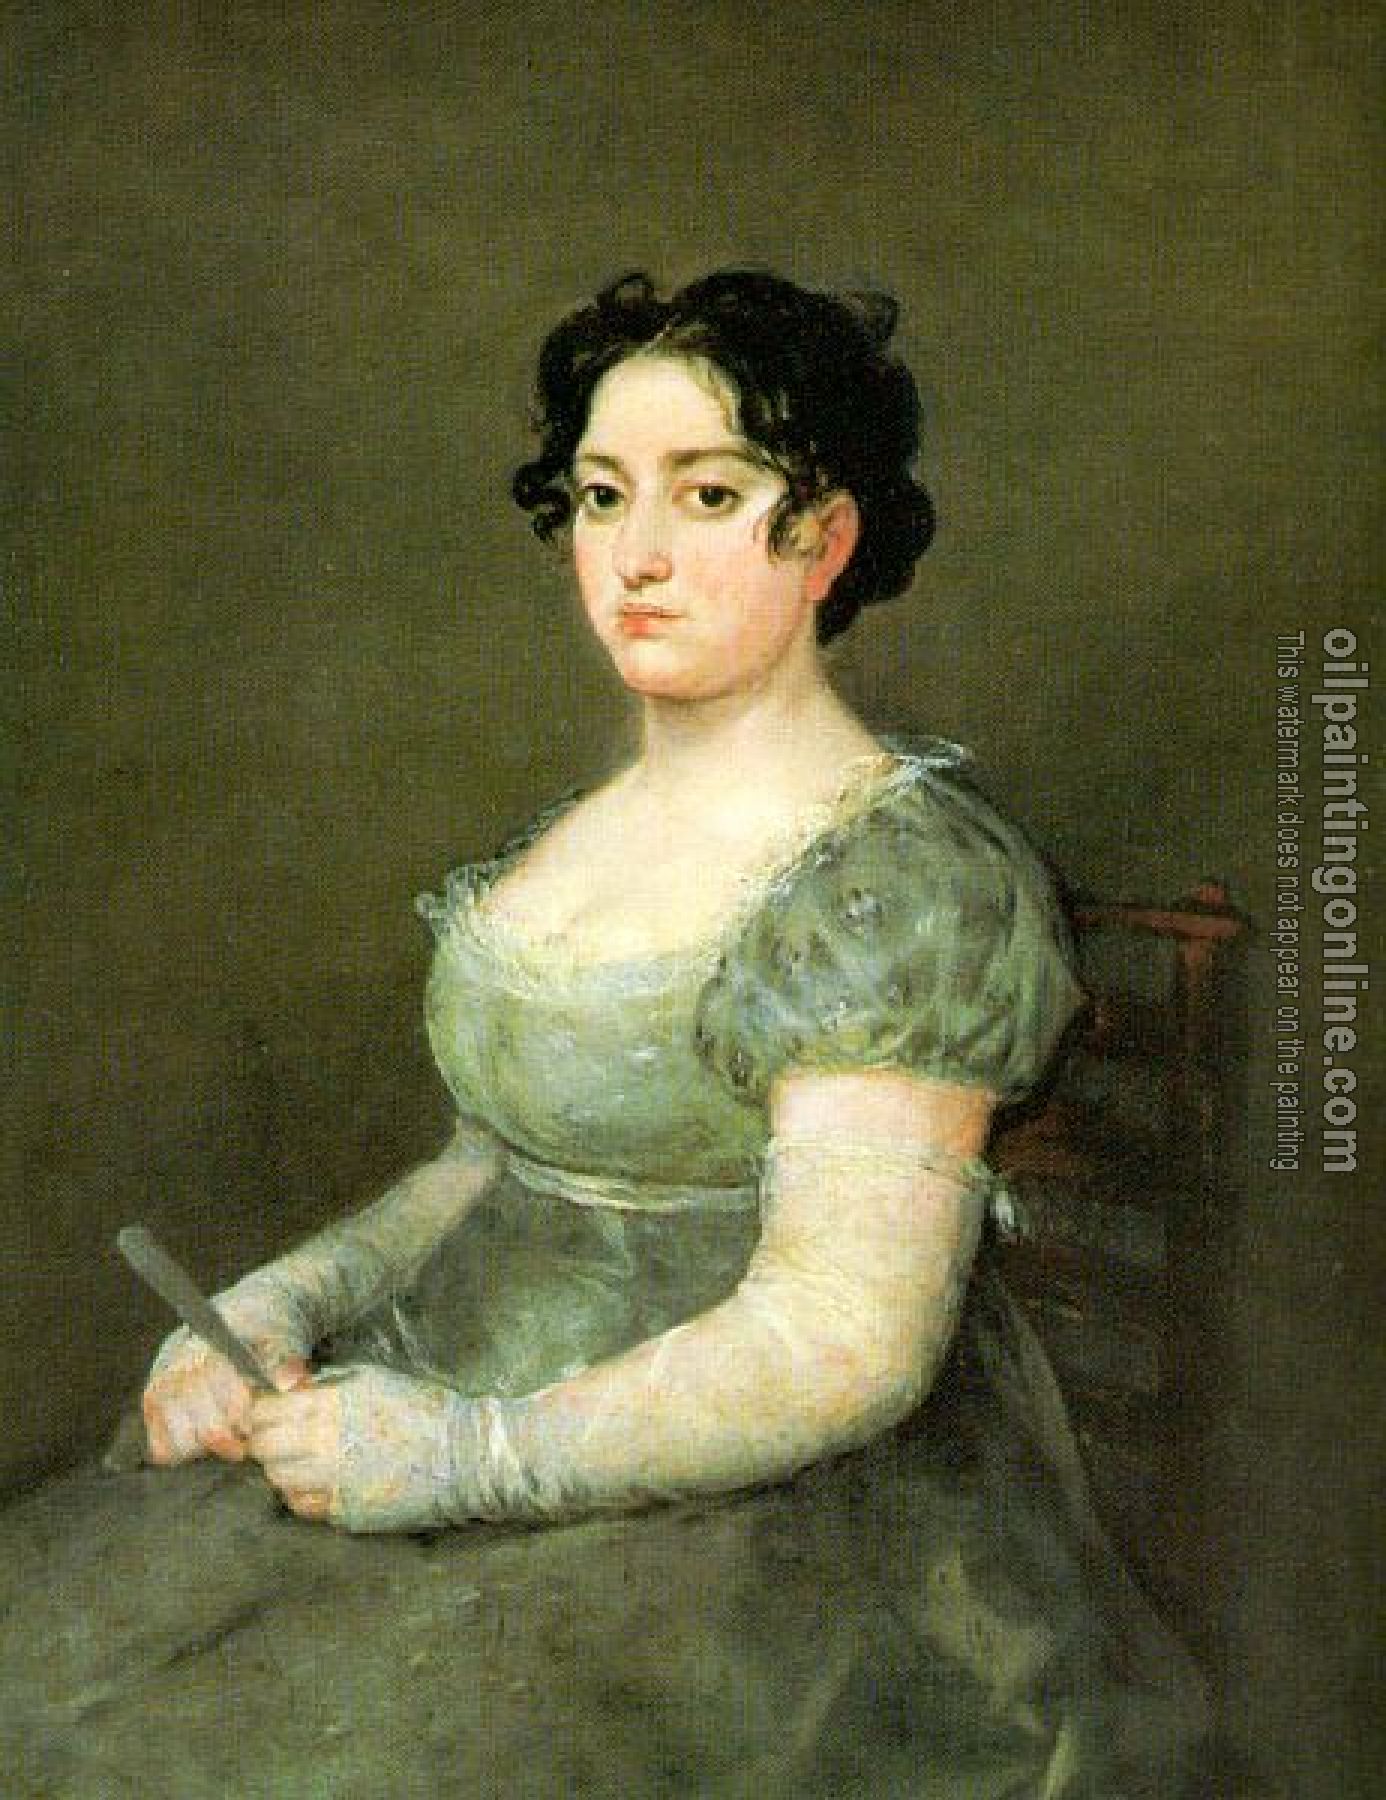 Goya, Francisco de - The Woman with a Fan